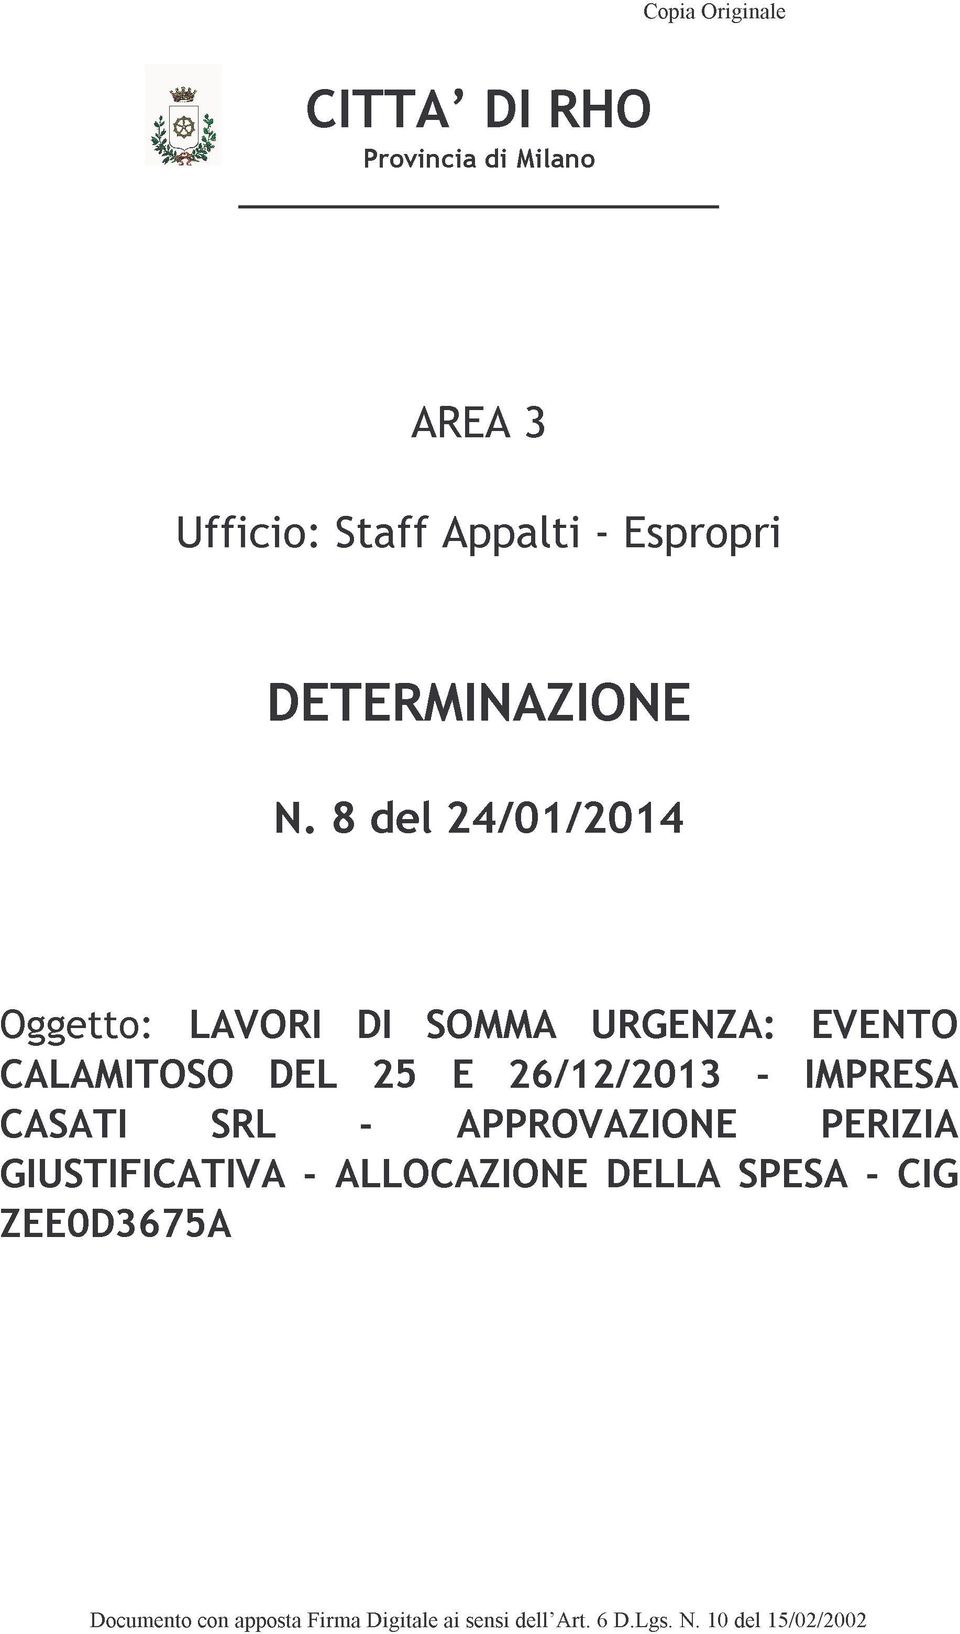 8 del 24/01/2014 CALAMITOSO CASATI GIUSTIFICATIVA ZEE0D3675A LAVORI SRL DEL - ALLOCAZIONE DI -